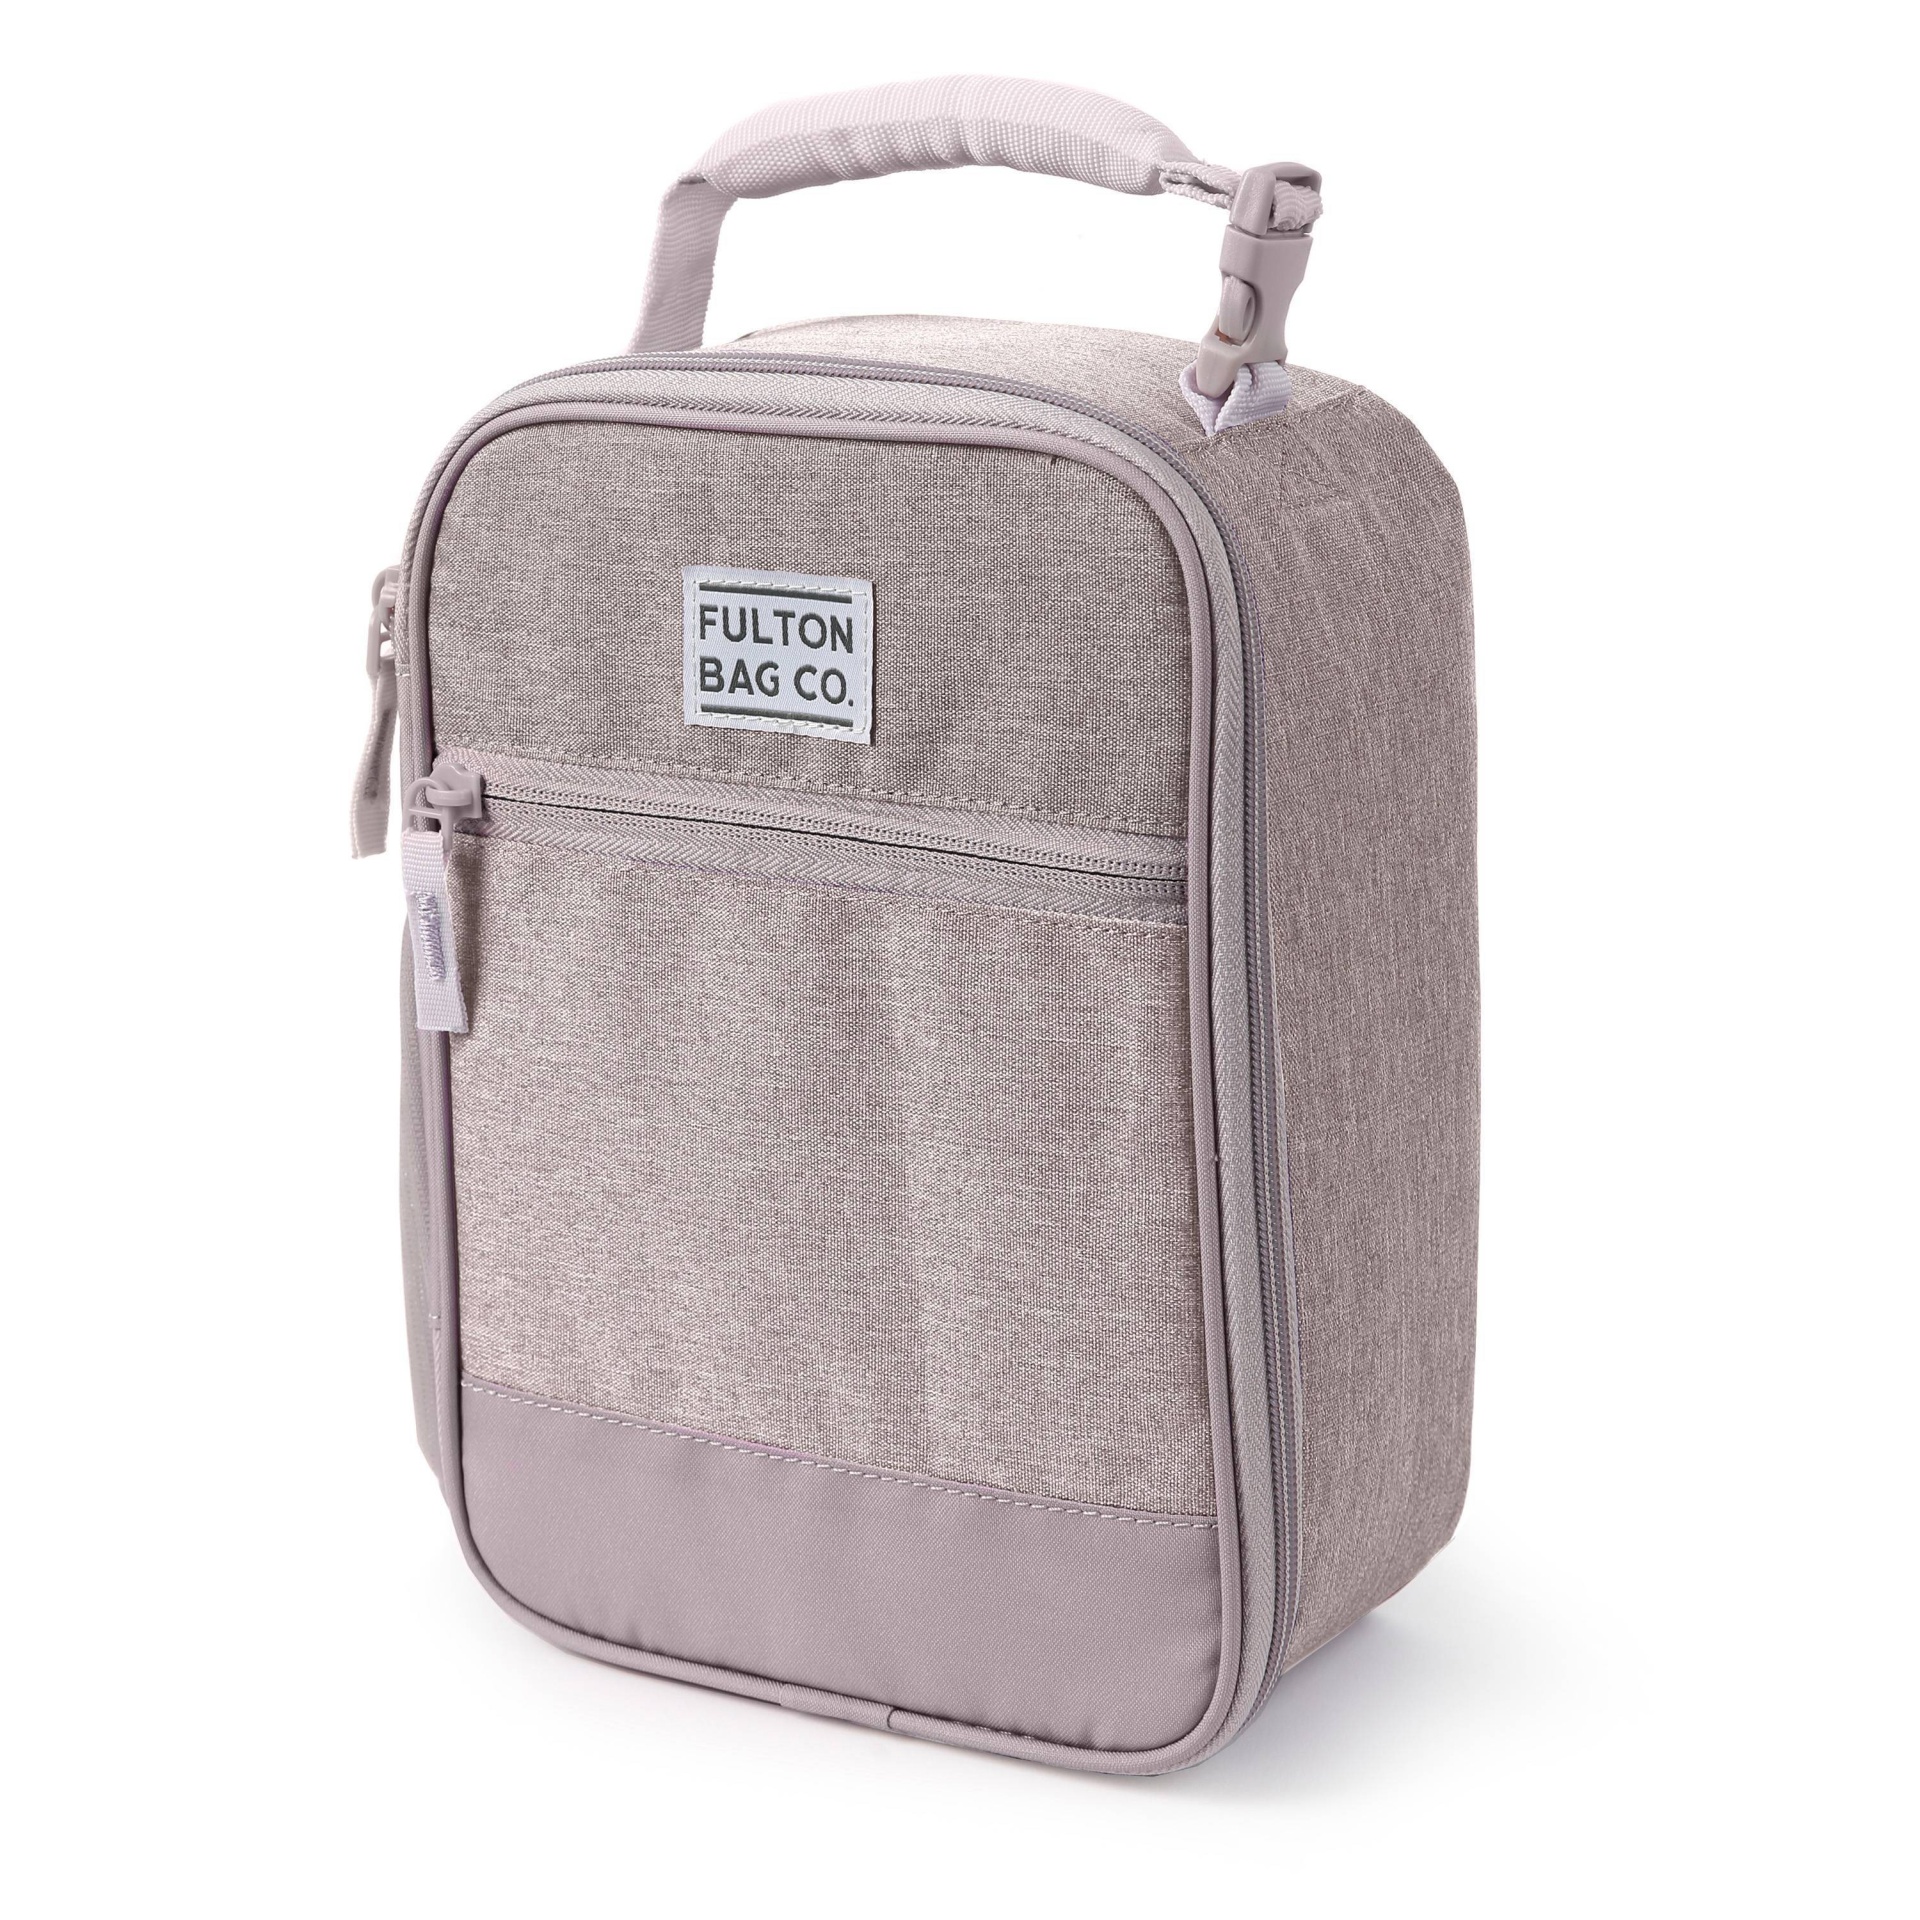 Fulton Bag Co. Upright Lunch Bag - Hushed Violet 1 ct